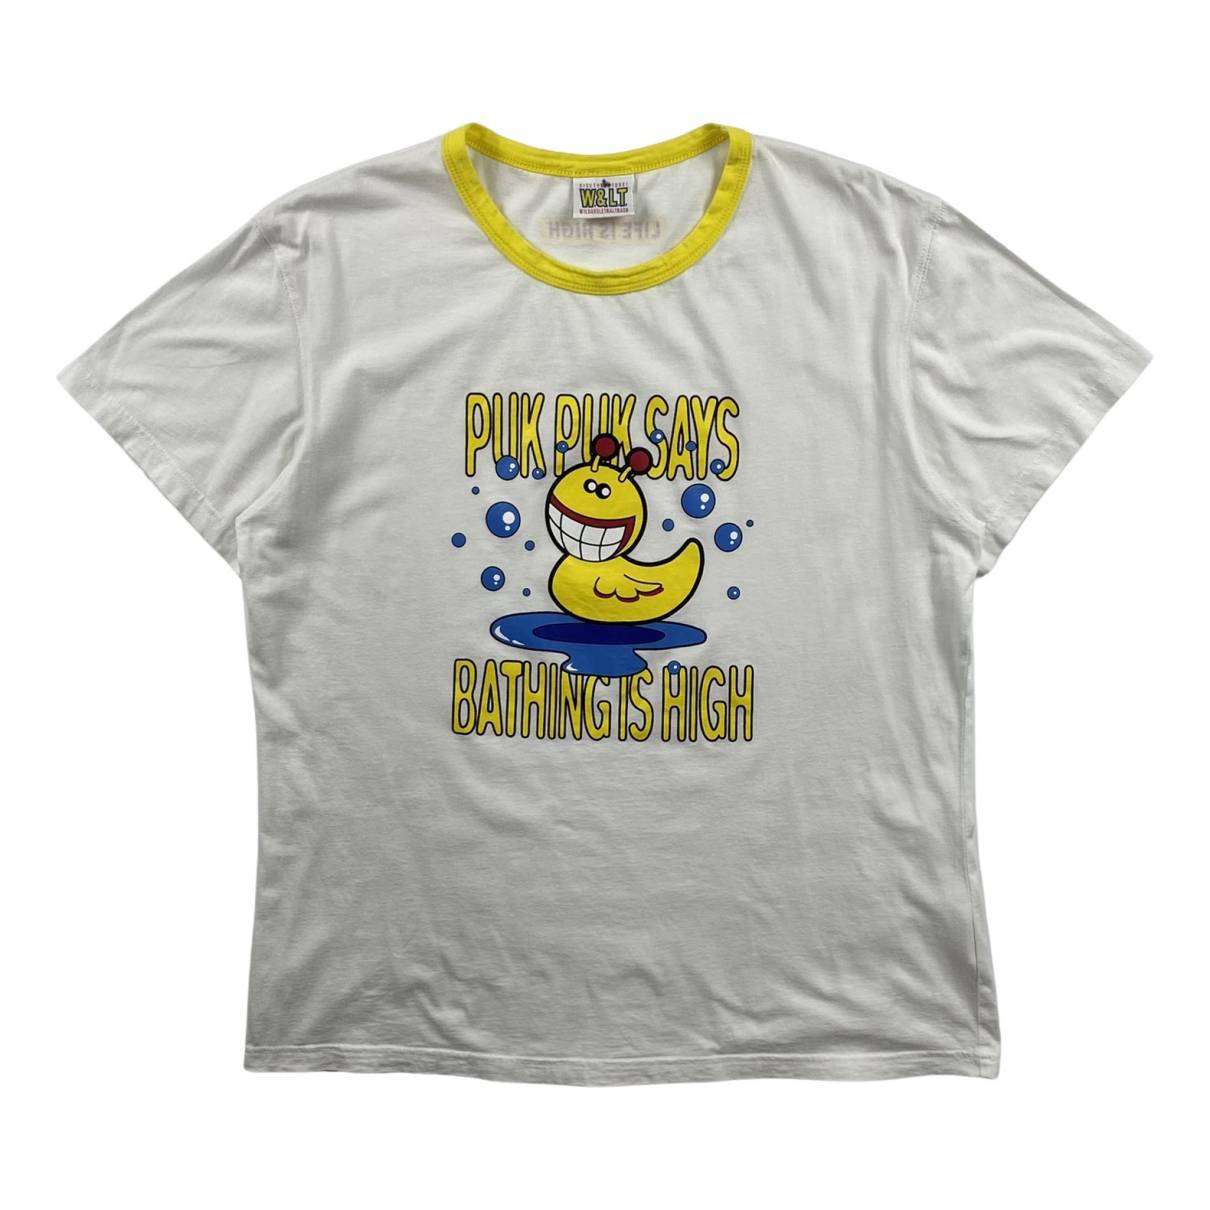 T-shirt Walter Van Beirendonck White size M International in Cotton -  36643789